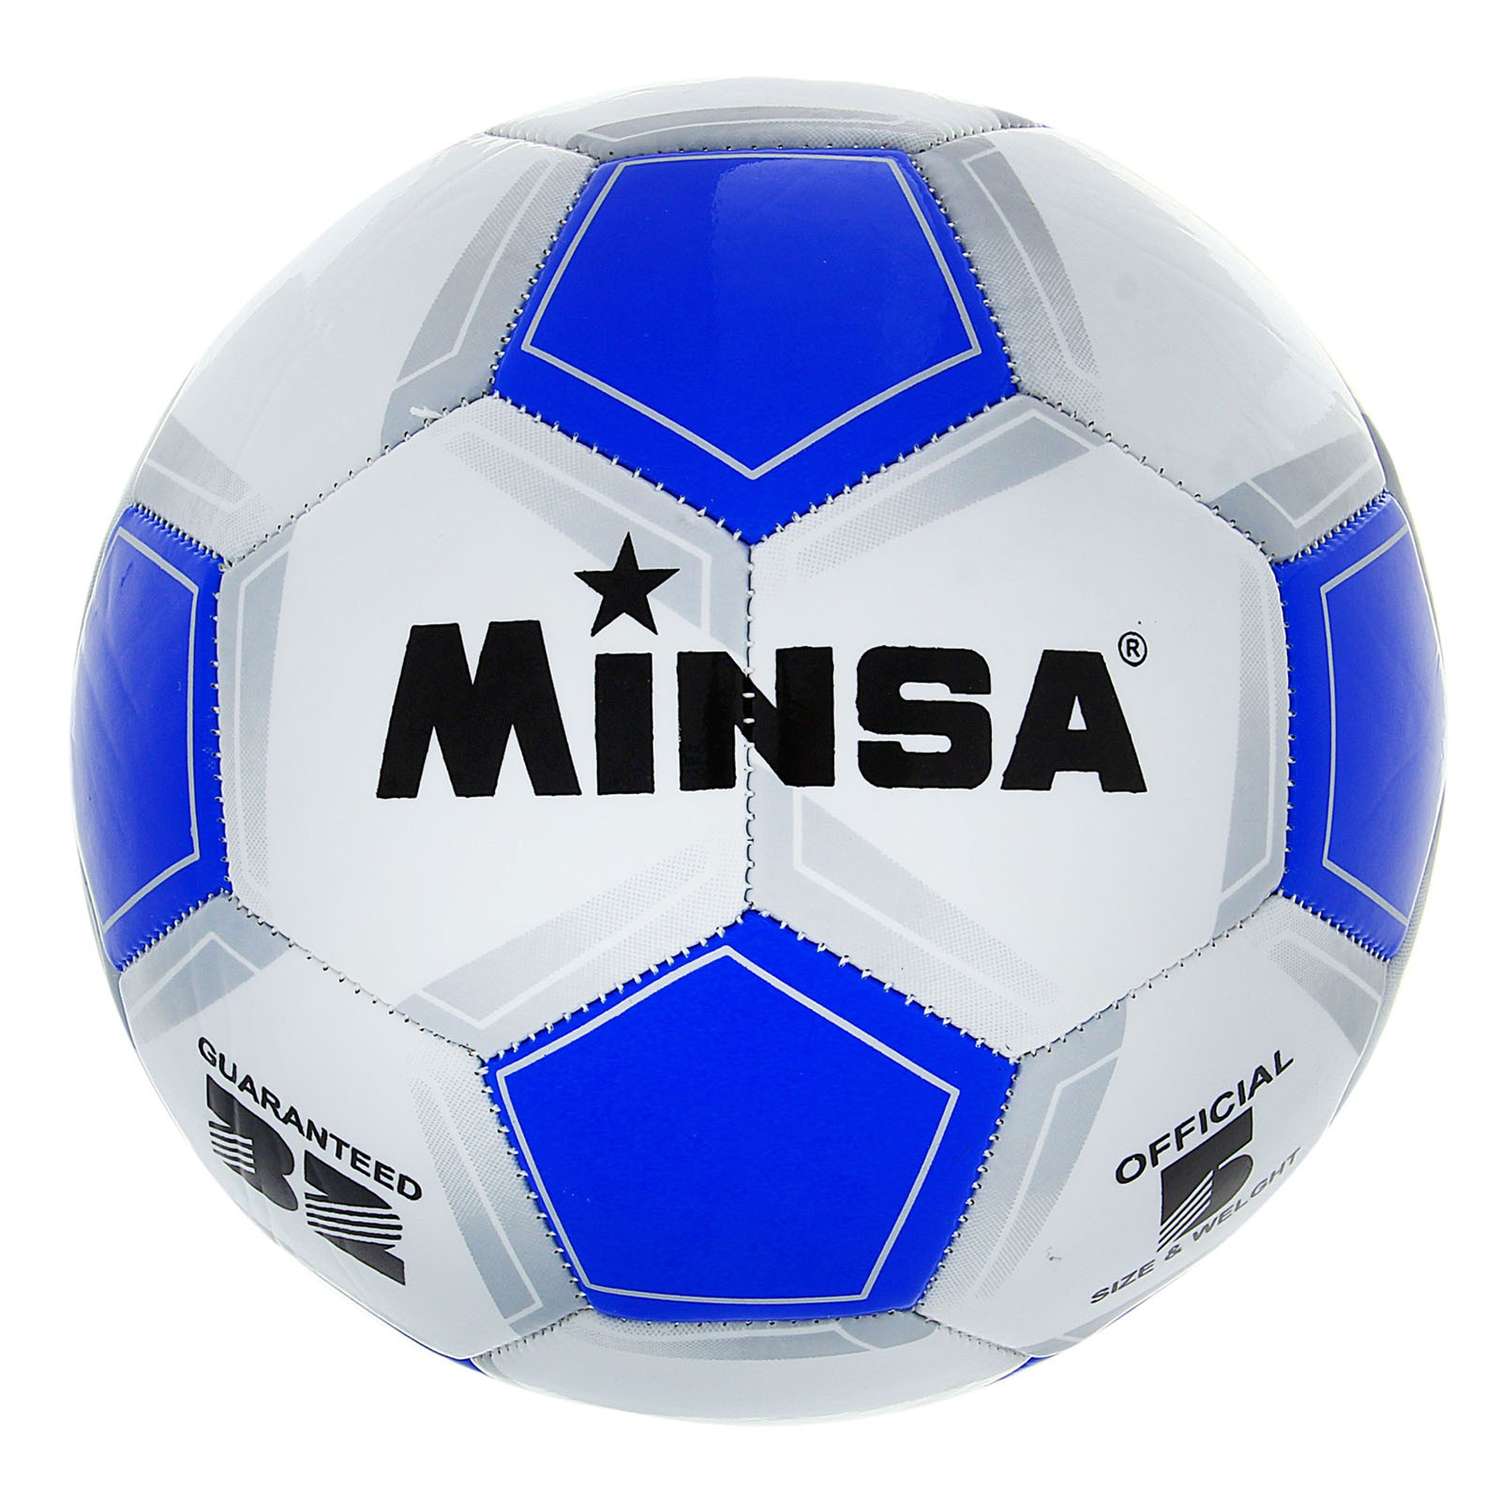 Мяч MINSA футбольный Classic. ПВХ. машинна сшивка. 32 панели. размер 5. 340 г - фото 1